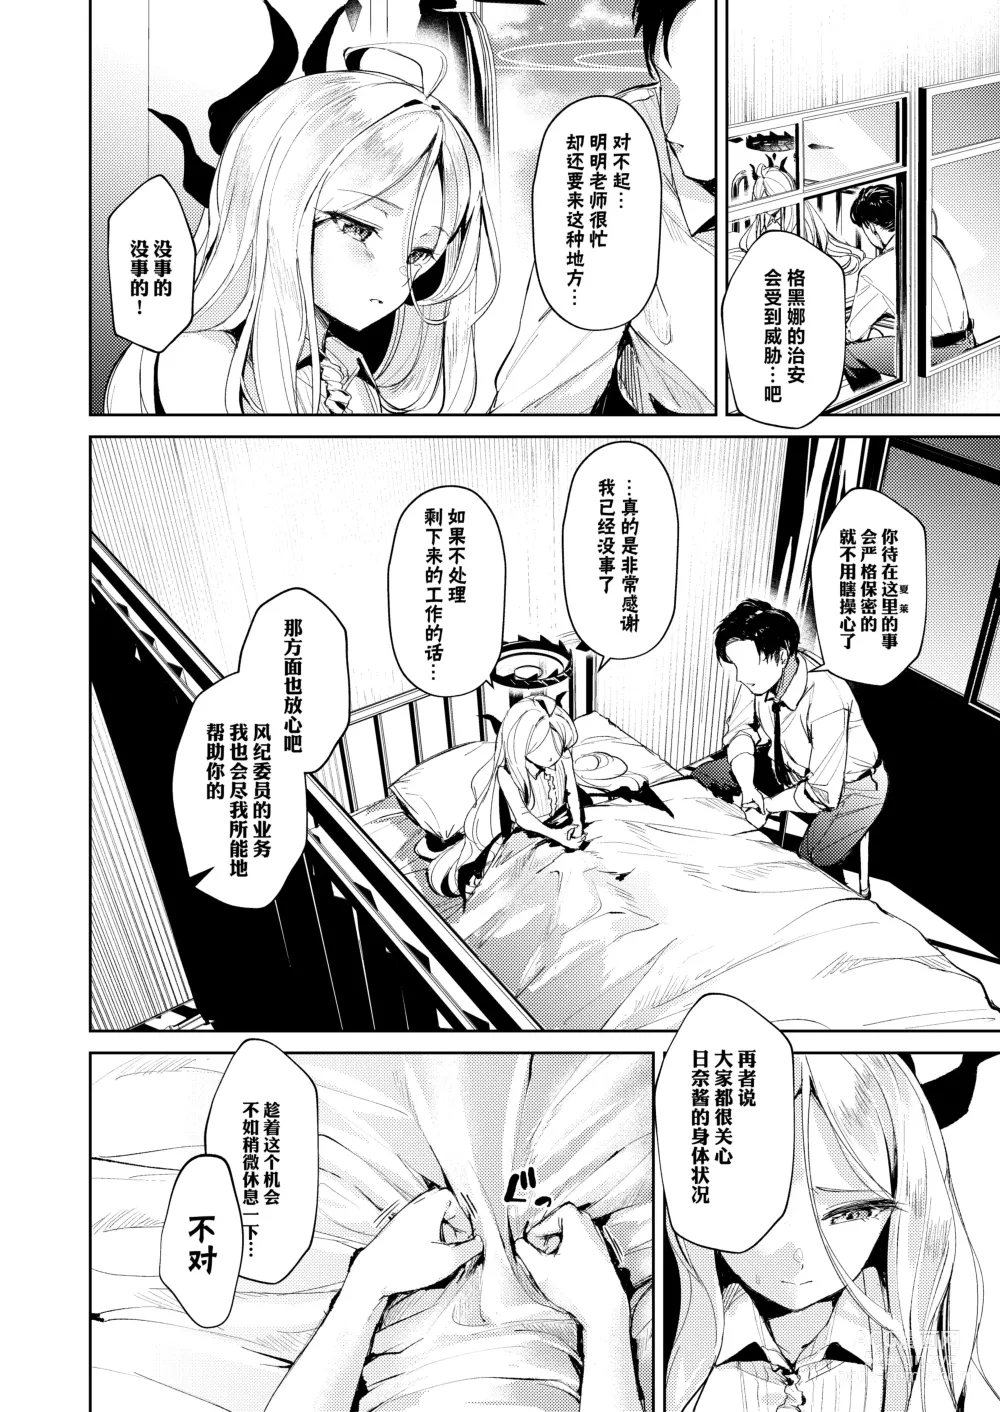 Page 6 of doujinshi 与委员长间特殊的情事